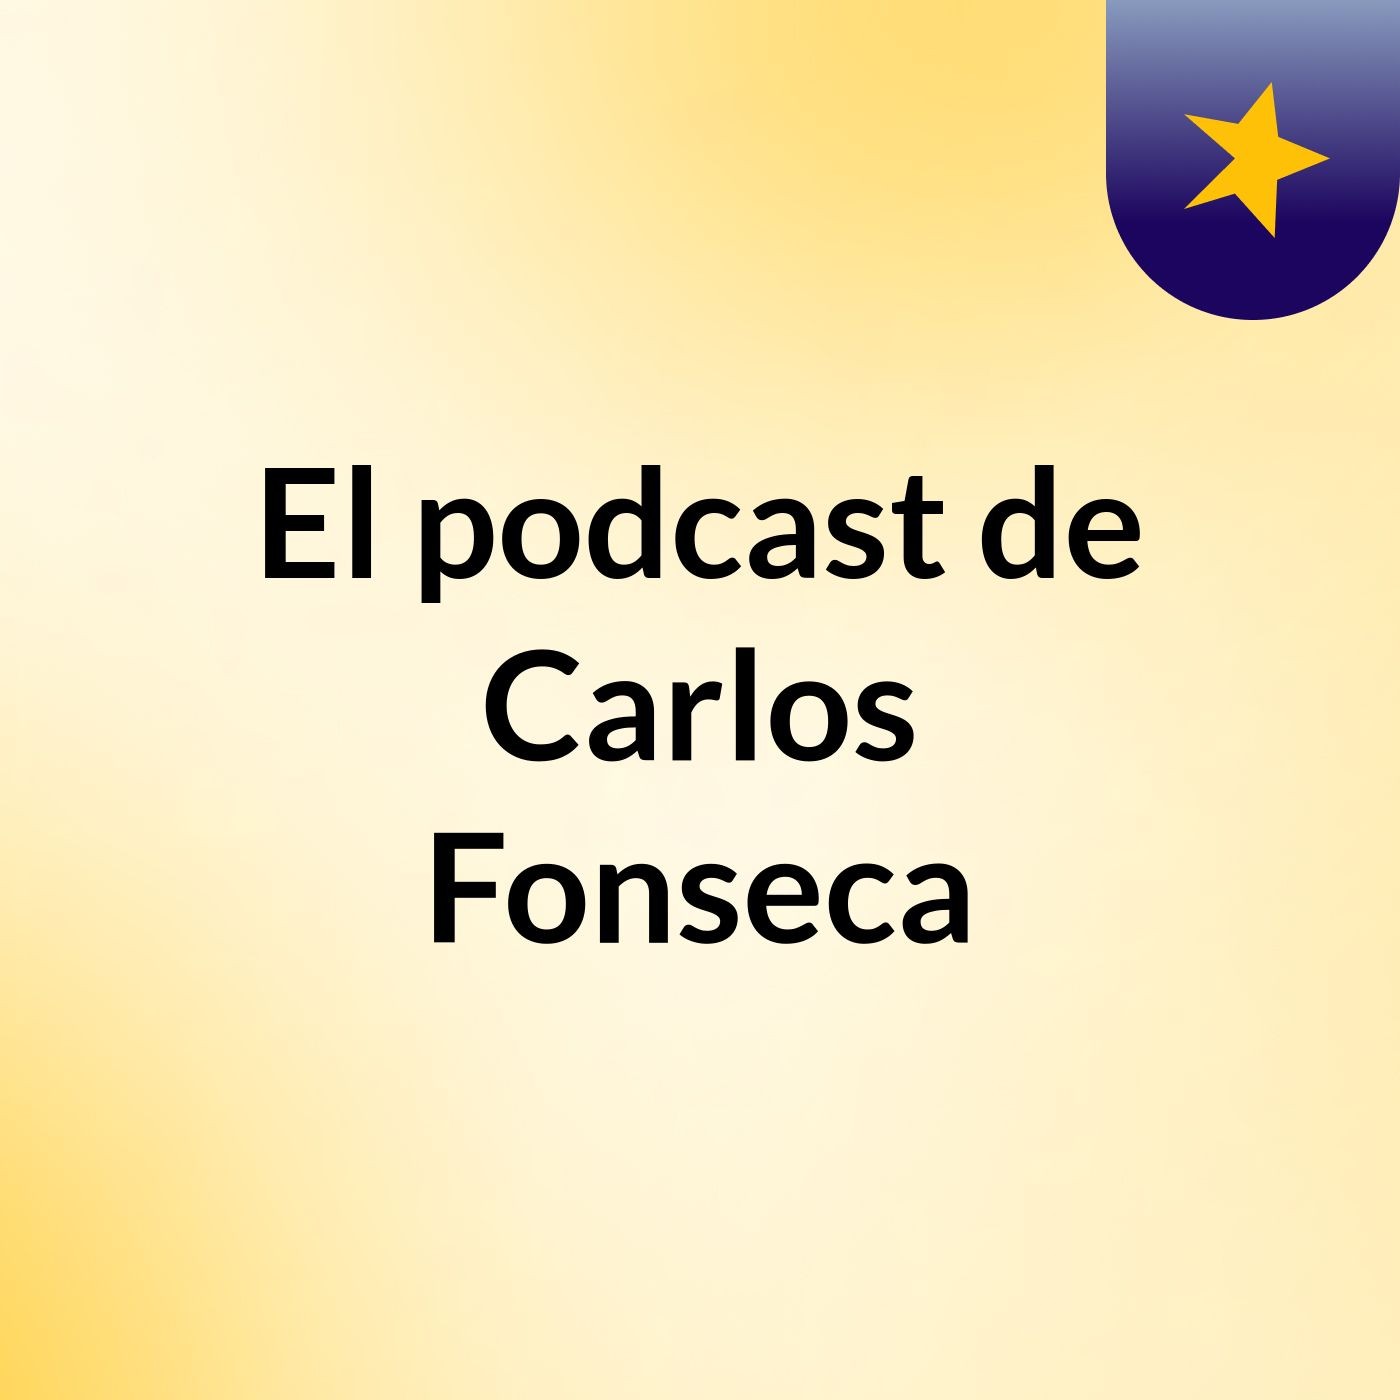 El podcast de Carlos Fonseca